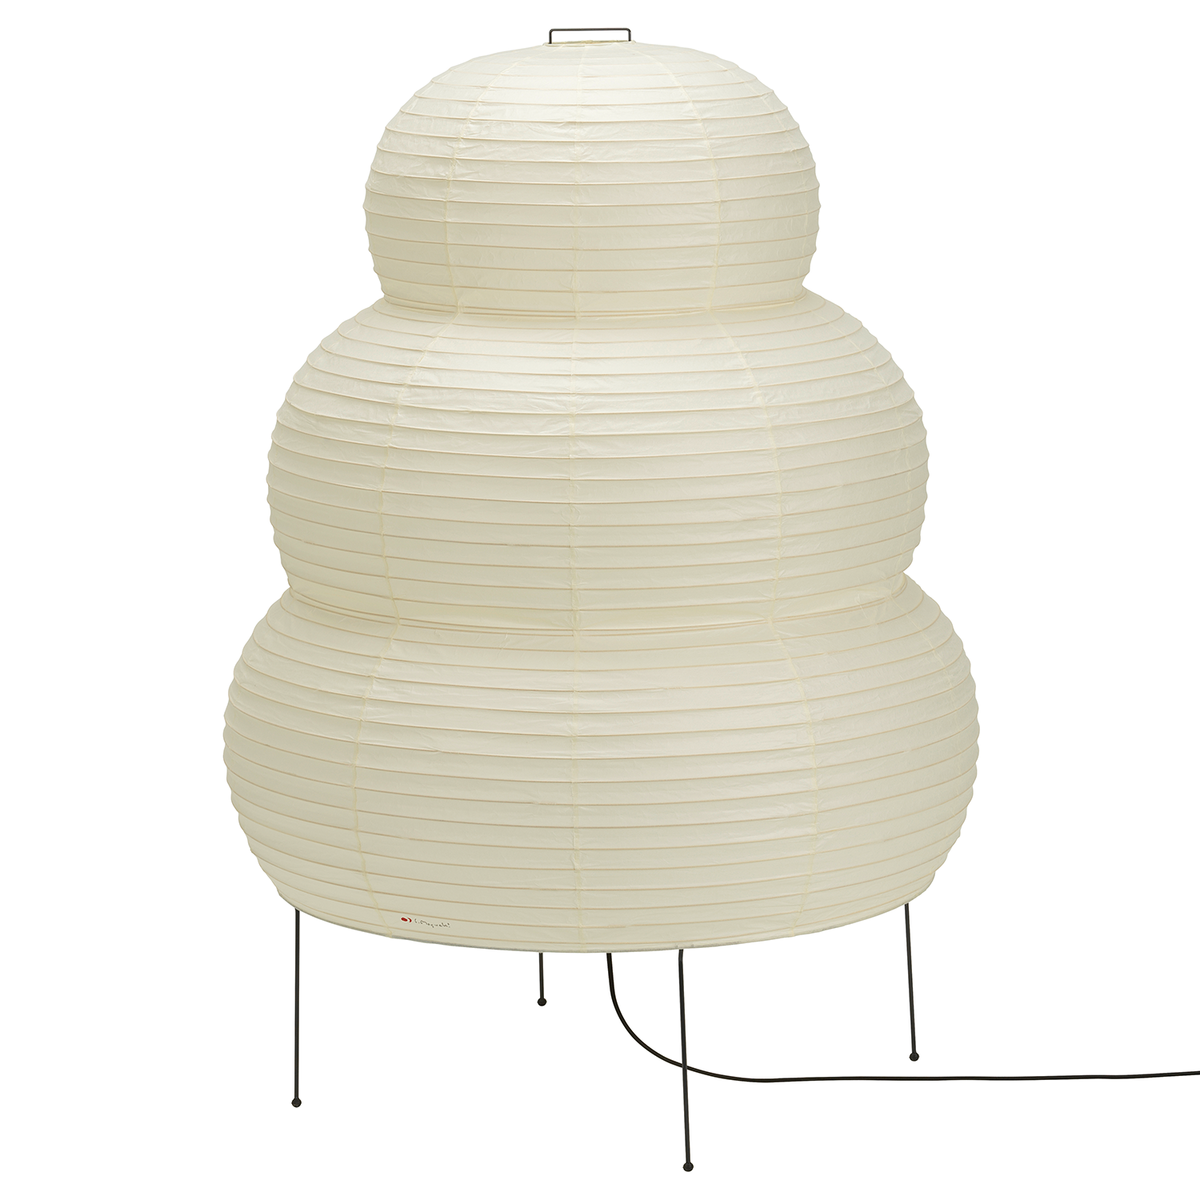 Isamu Noguchi AKARI 10A Lamp  Japanese Style Stand Light Only Shade 